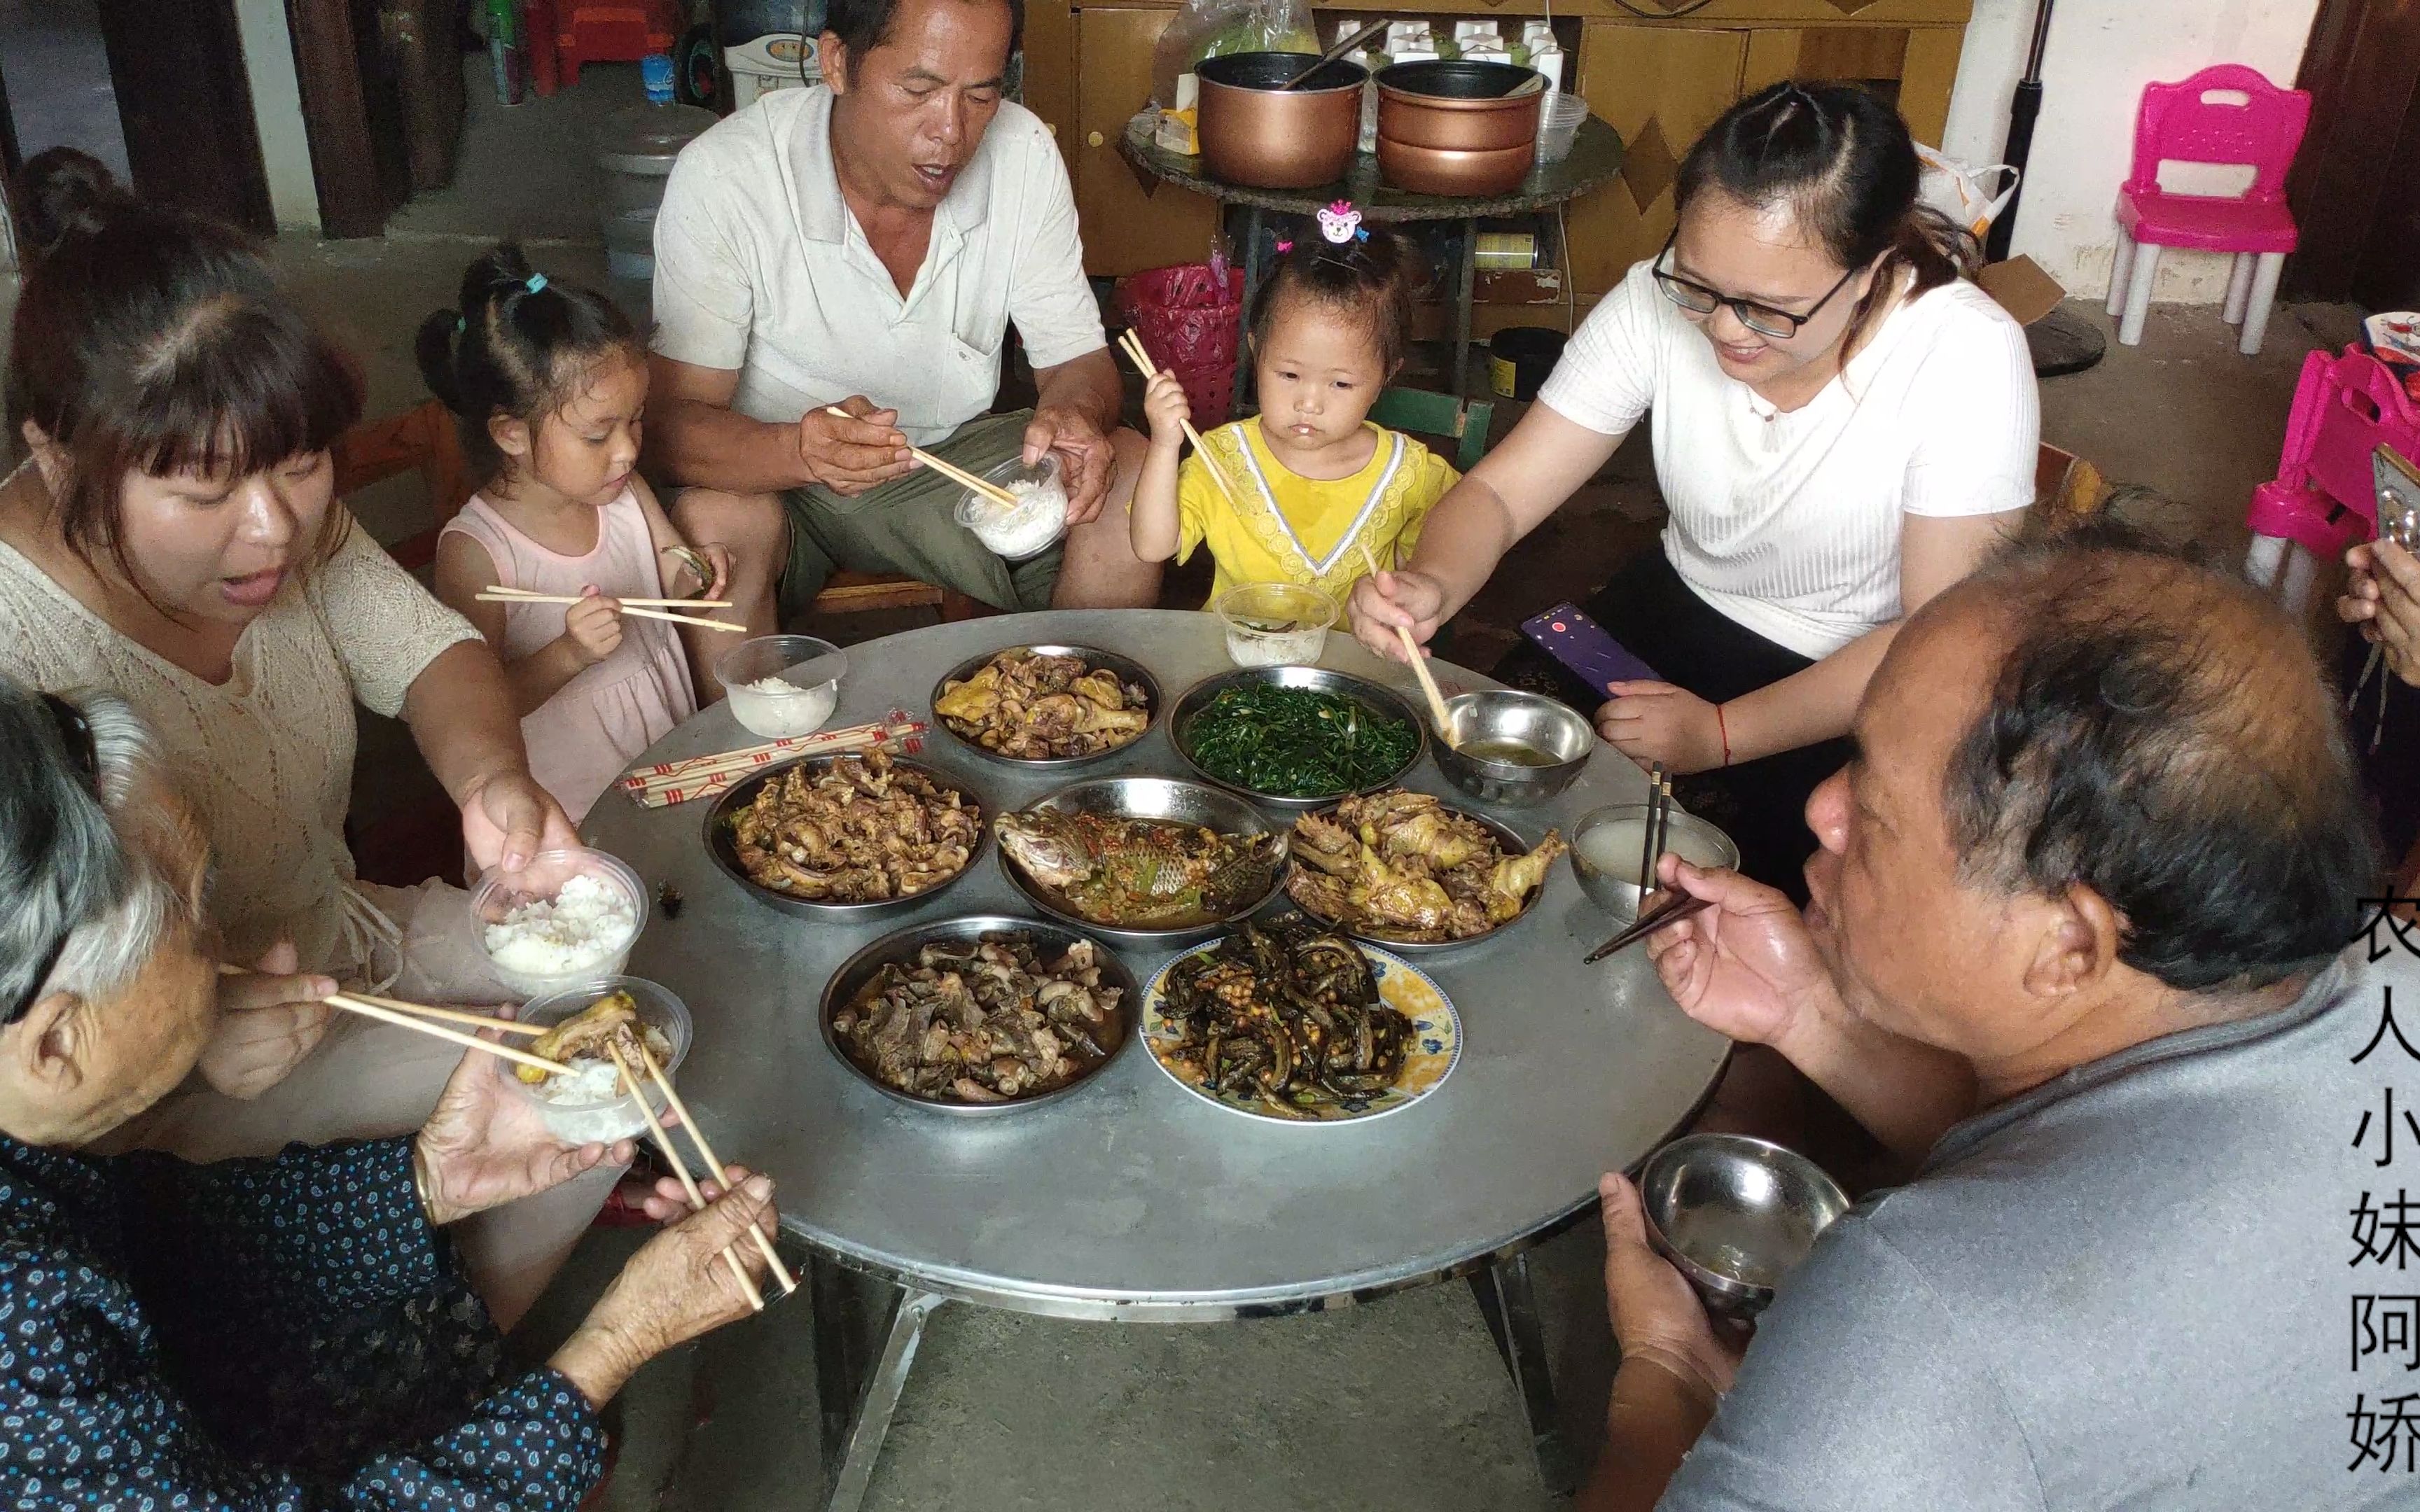 广西农村过端午节一家人聚在一起简简单单吃个饭满满的幸福感